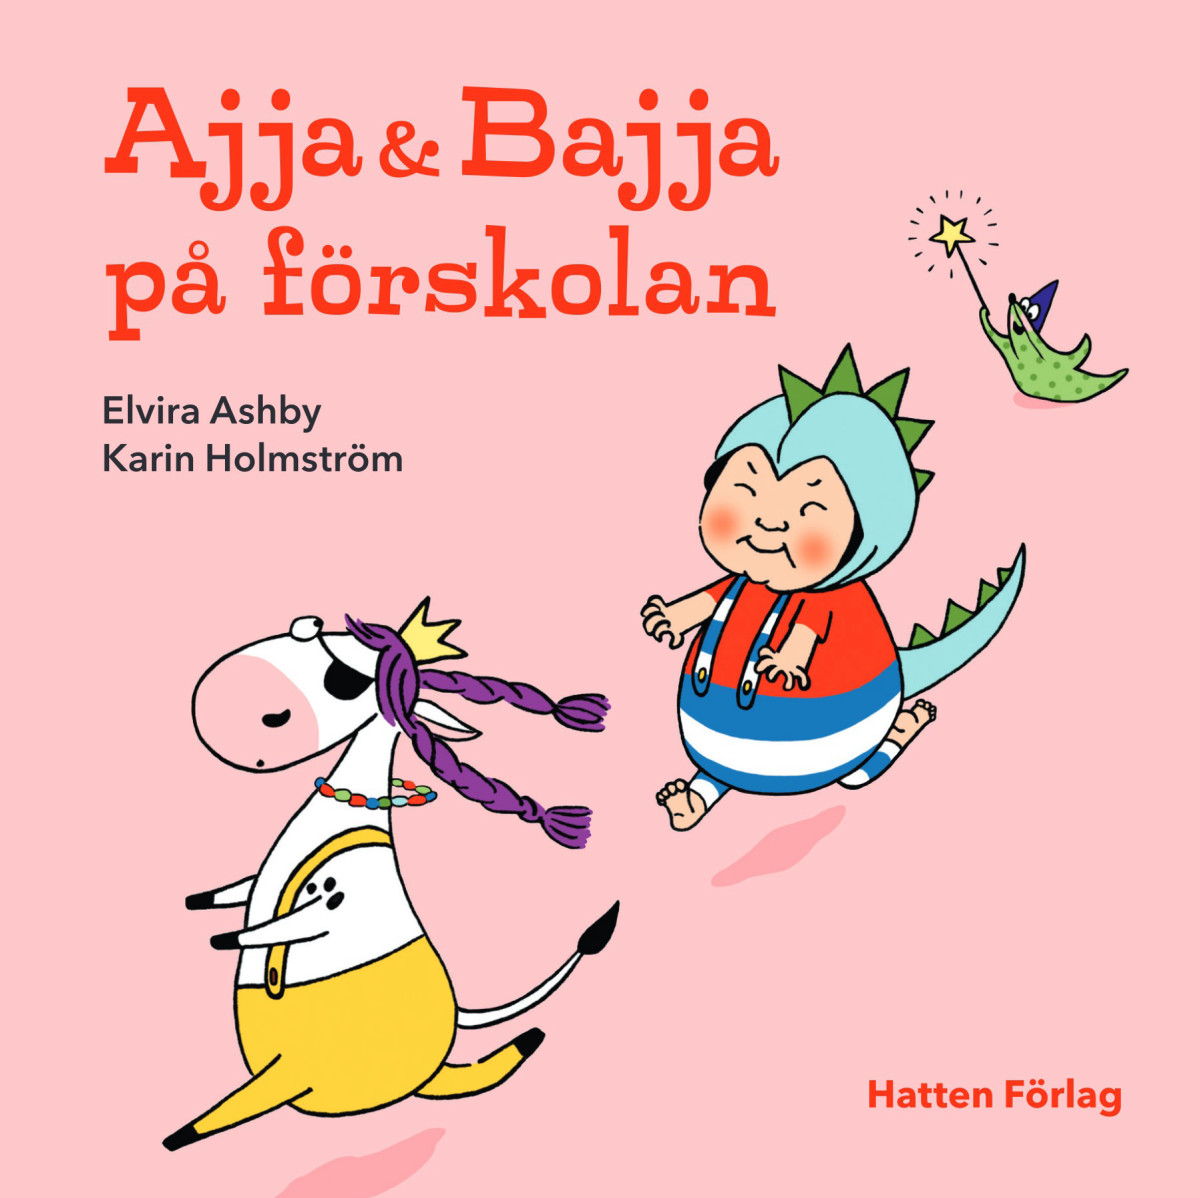 Bokomslag för barnboken 'Ajja & Bajja på förskolan' av Elvira Ashby, Karin Holmström